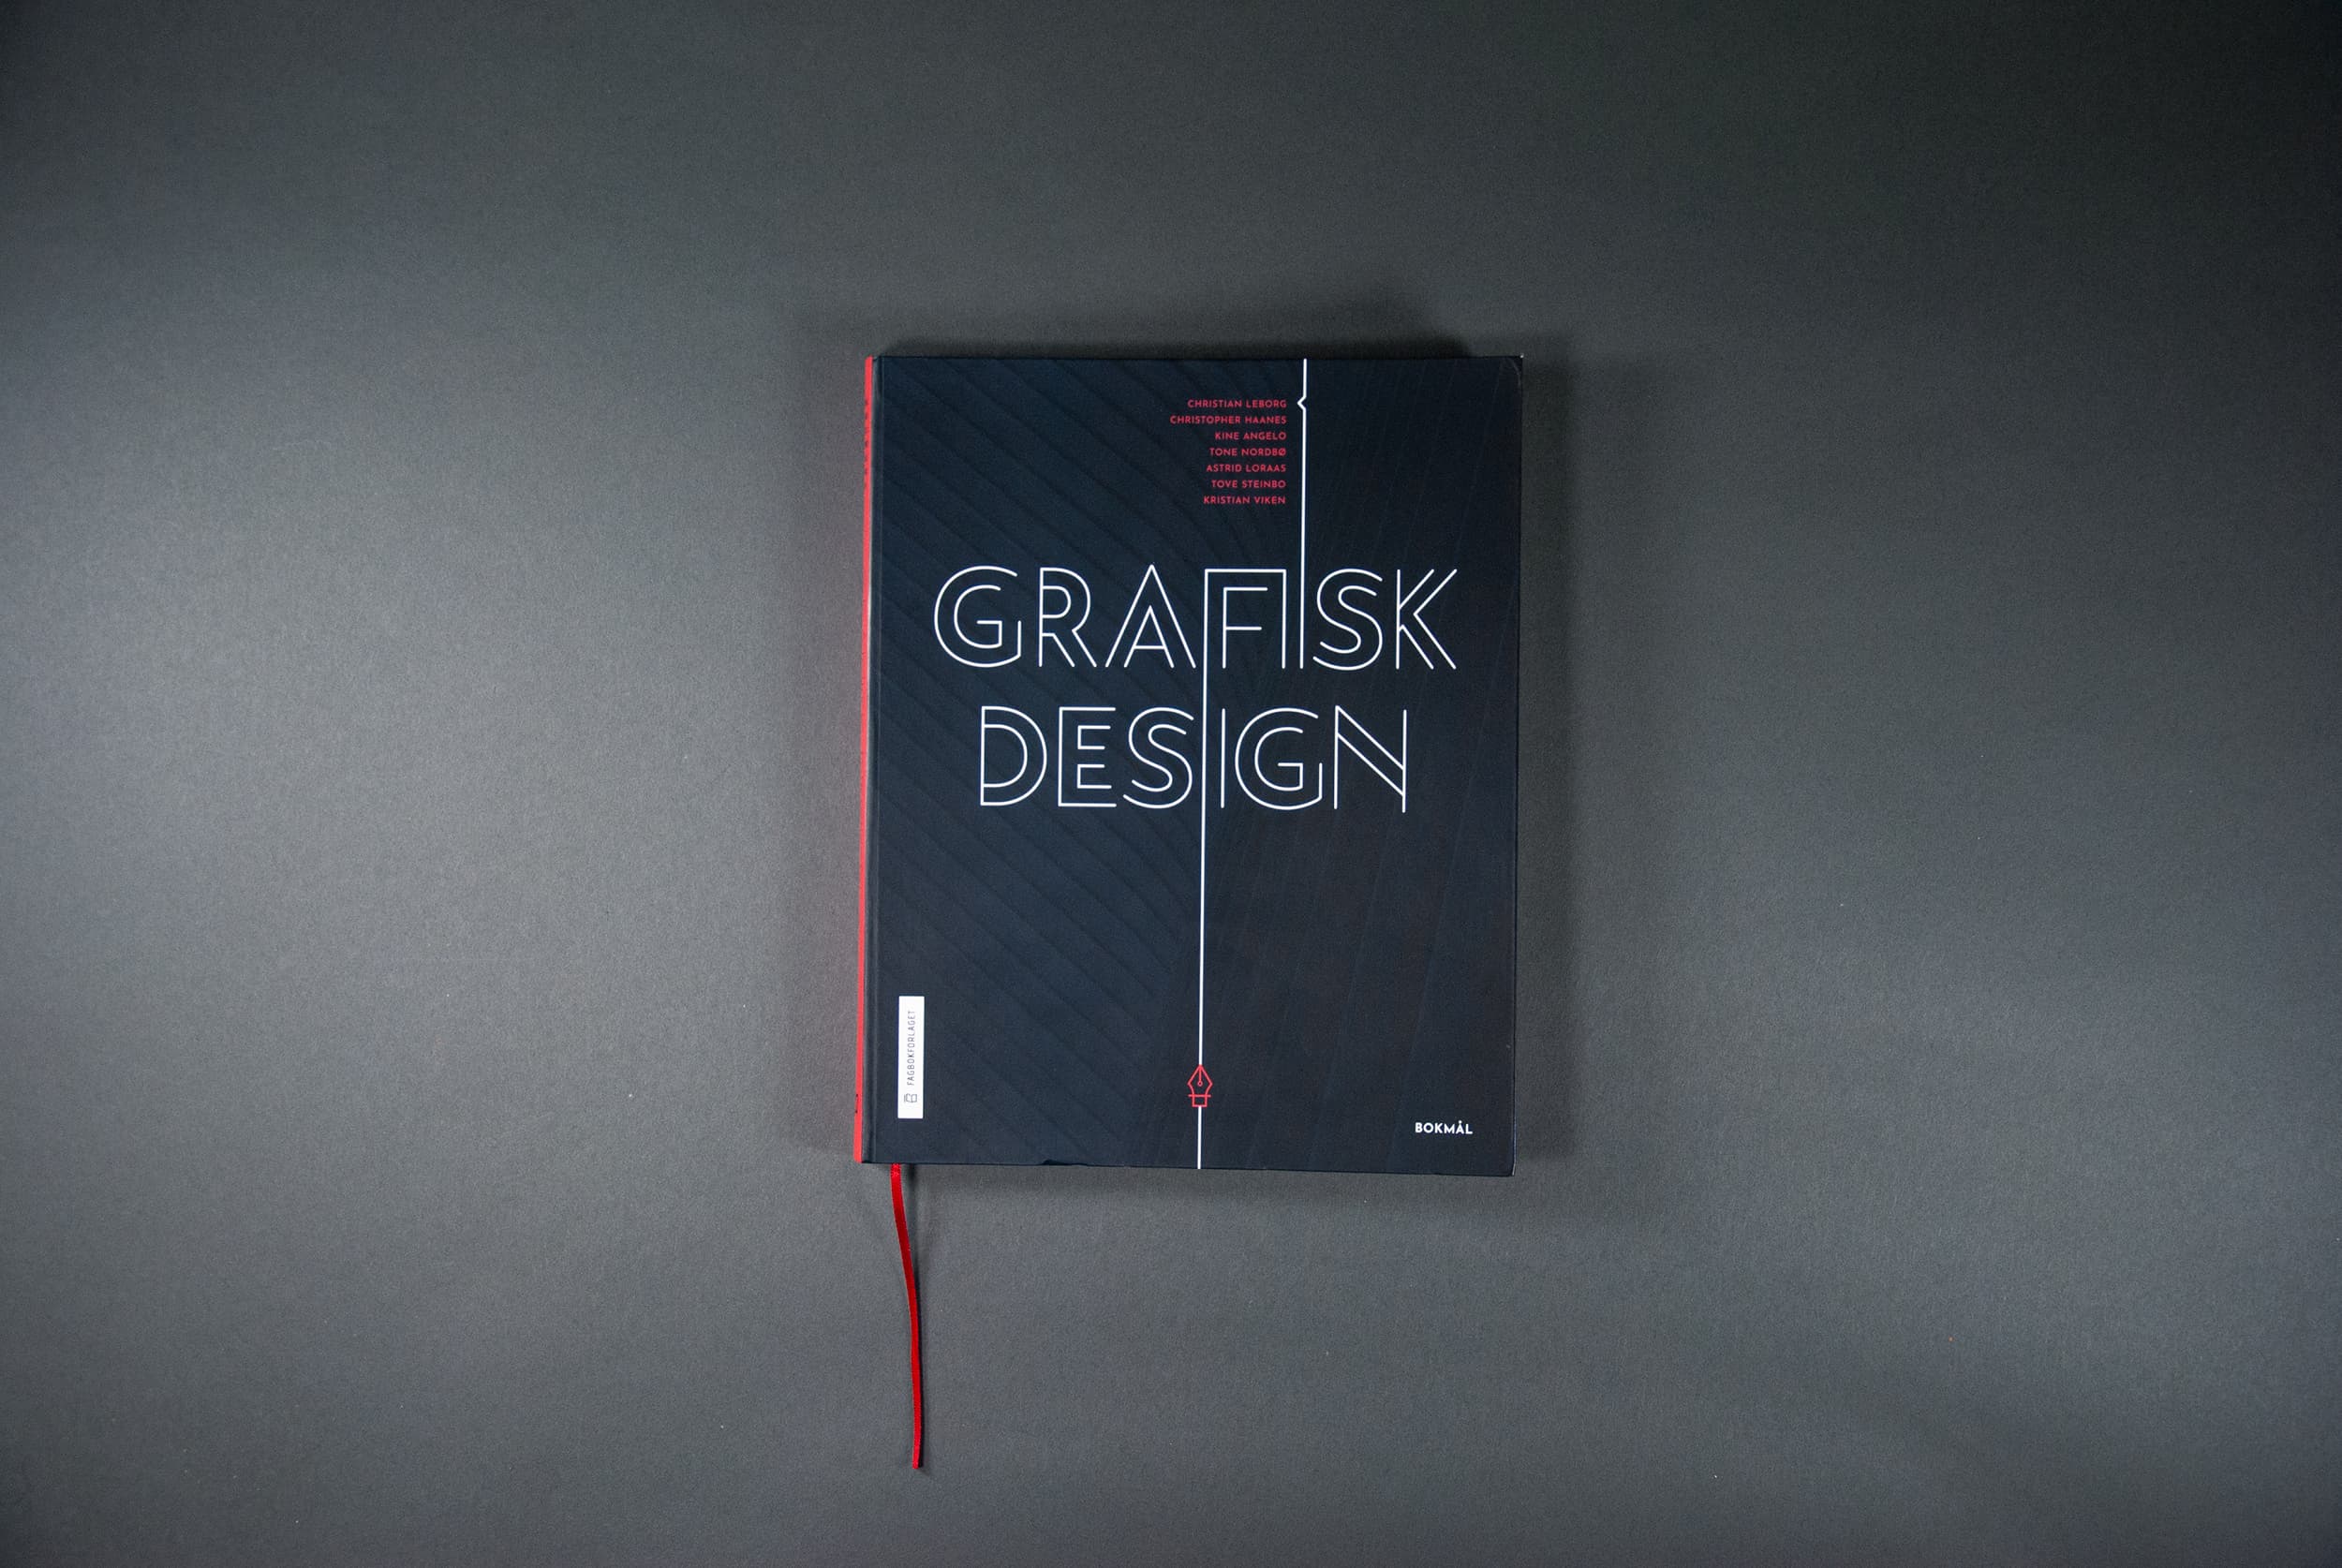 Bildet viser omslaget til boken. Det er sort med tittelen "Grafisk design" i hvitt og liten tekst i rødt.